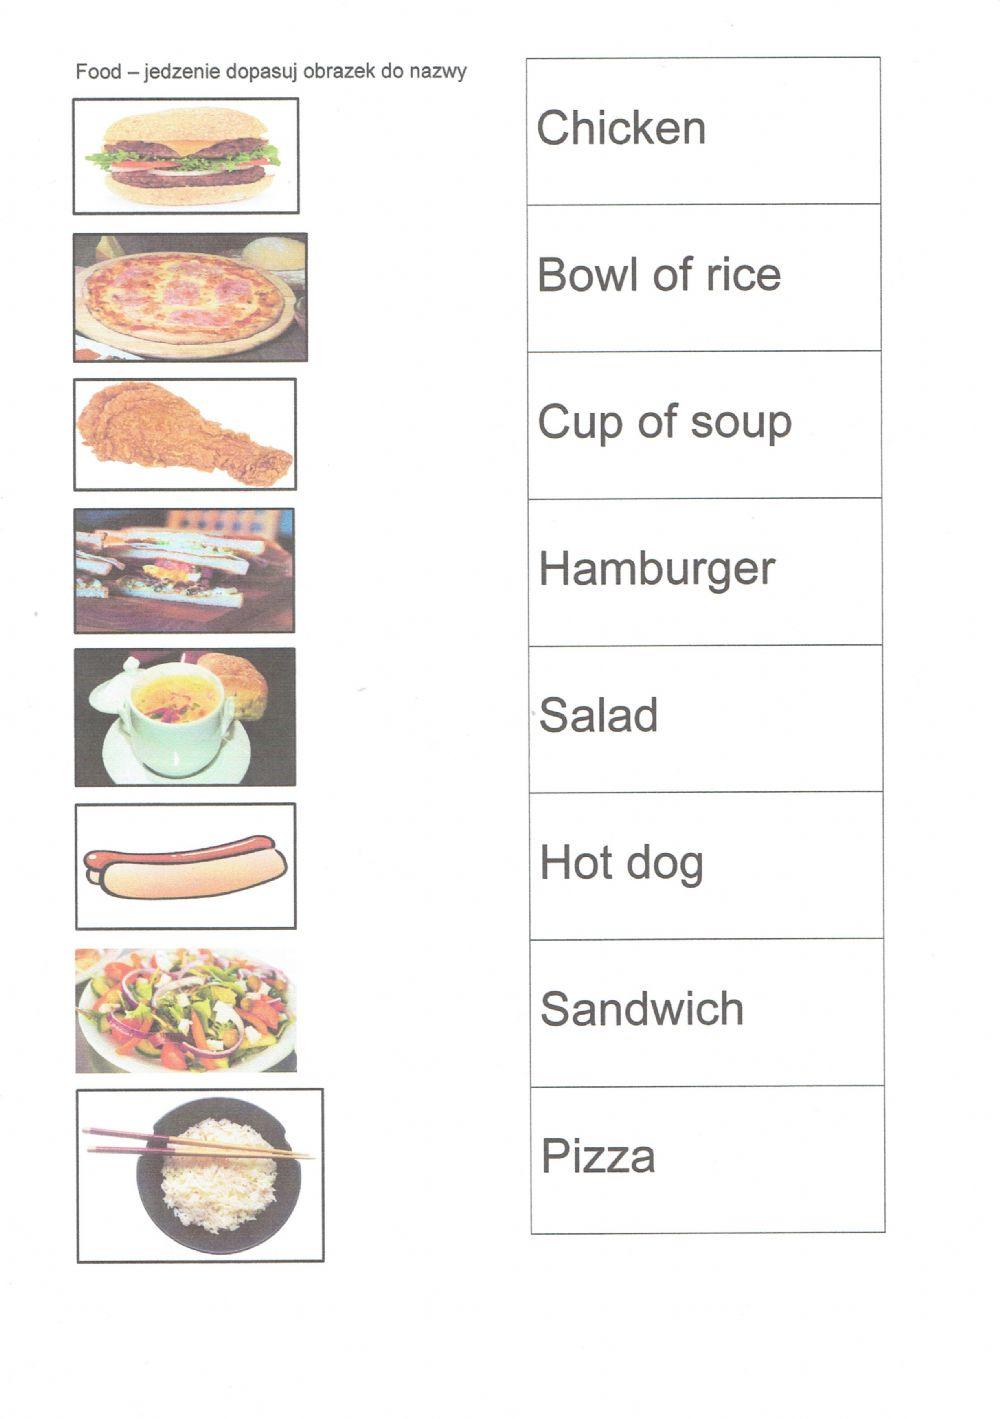 Nauka słówek jedzenie - jak klikniesz na obrazek lub słowo usłyszysz wymowę